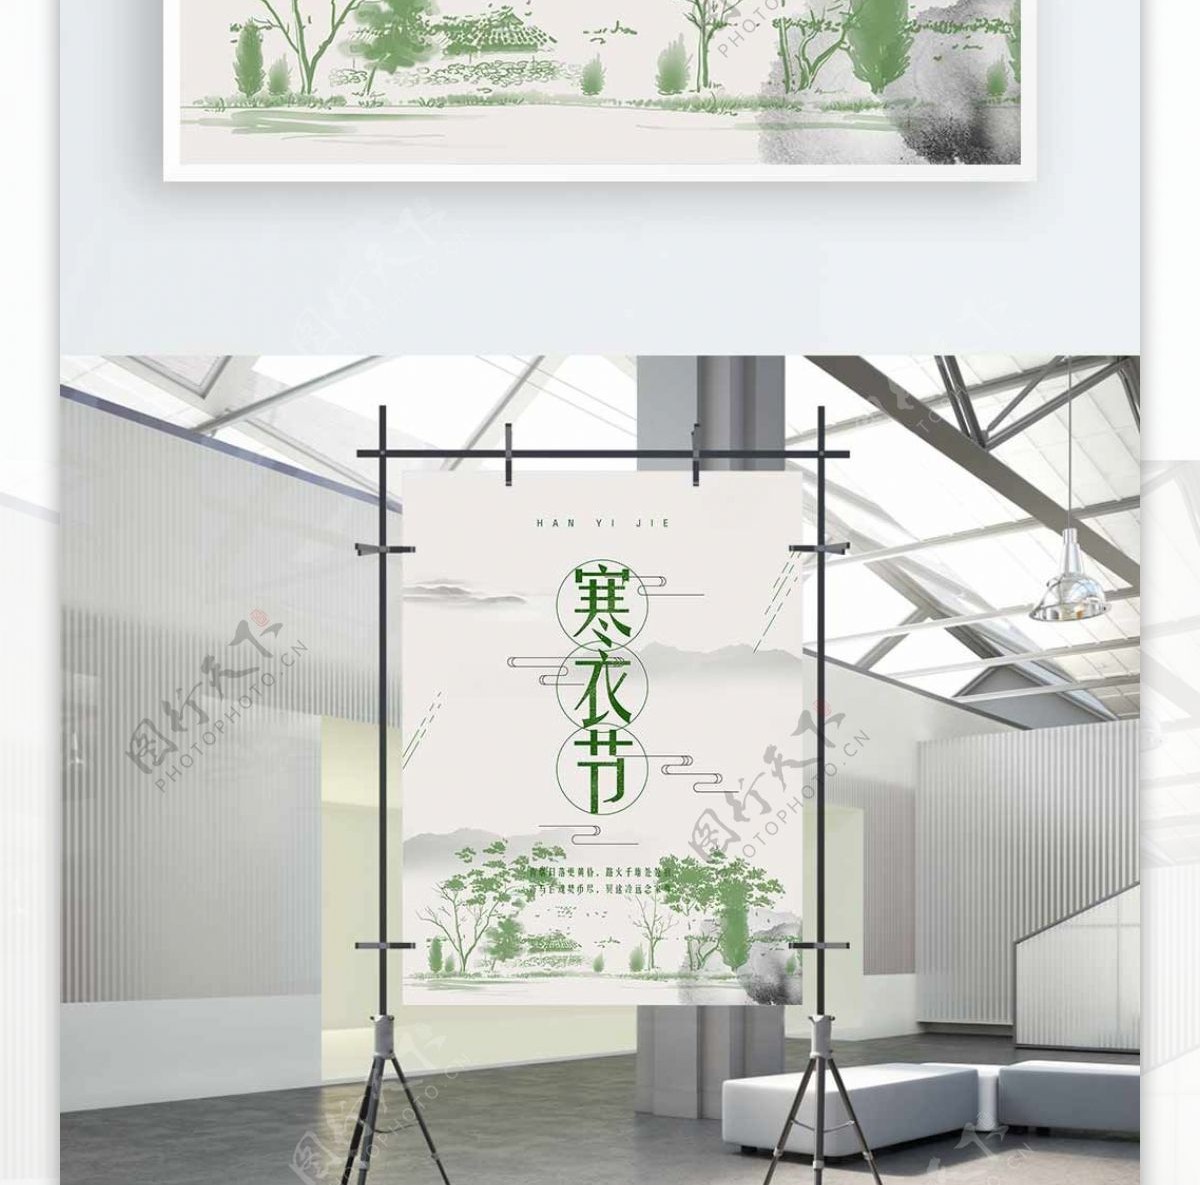 简约中国风寒衣节文化宣传海报设计